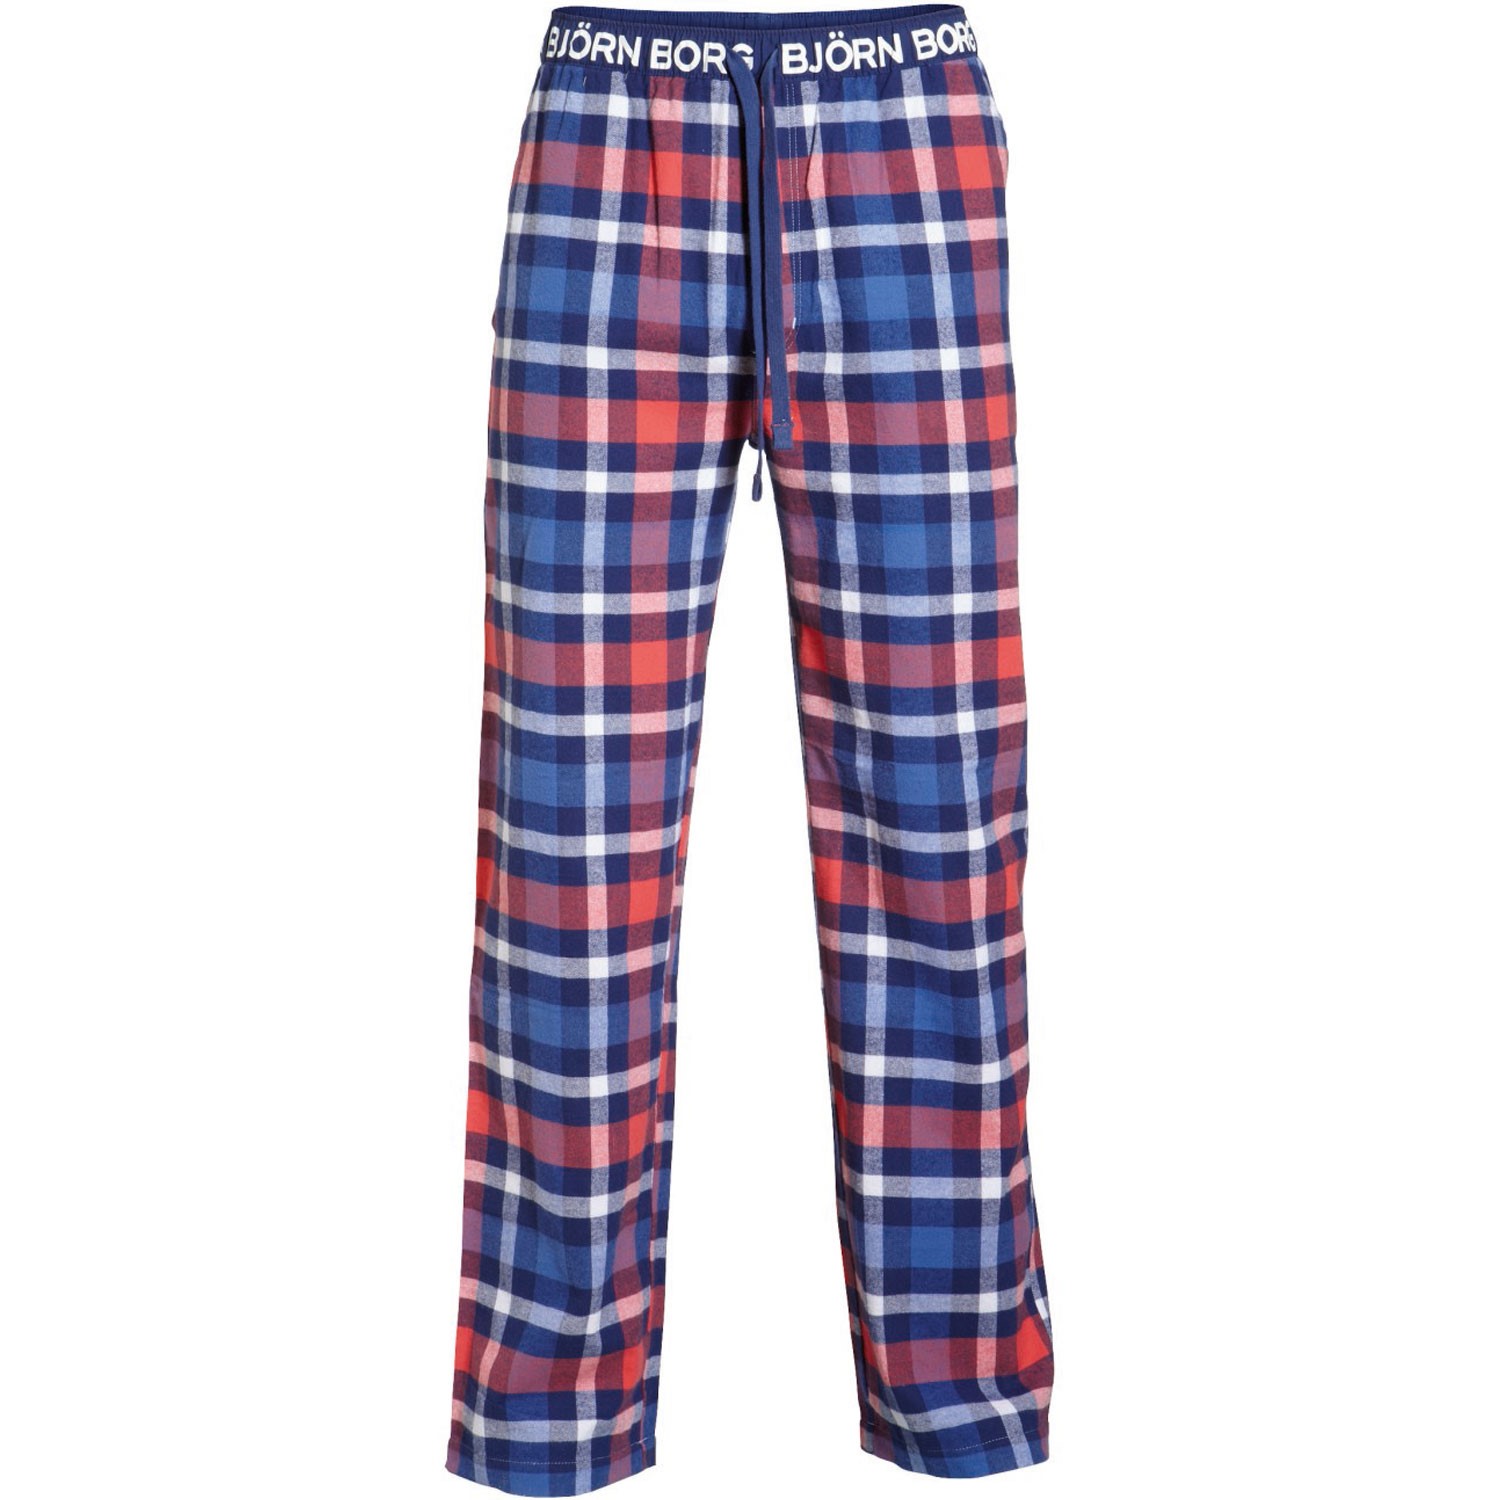 Björn Borg Pyjama Pants Check on Check Blueprint